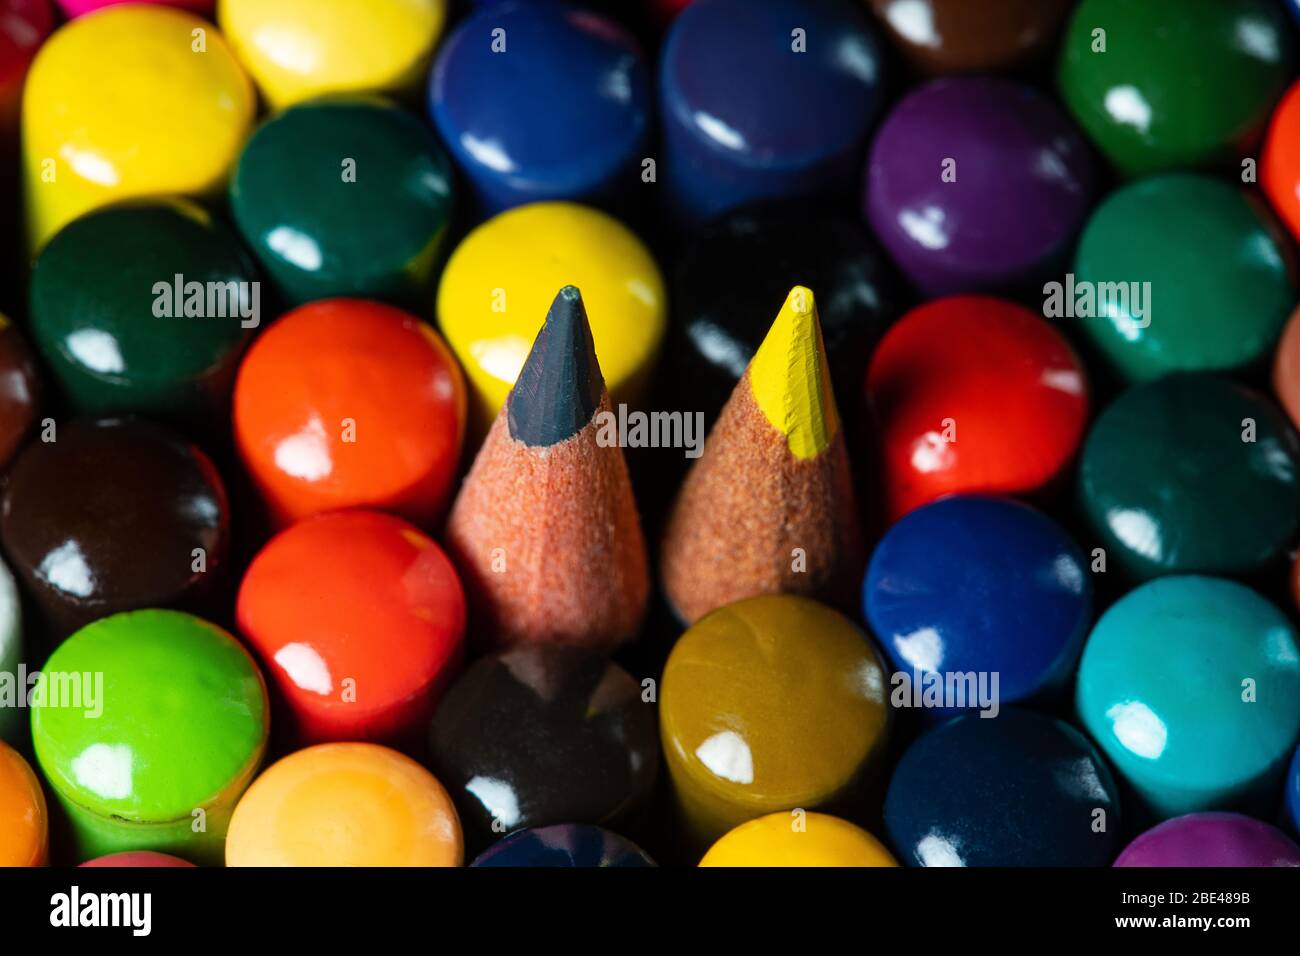 Immagine macro di un set di matite colorate dell'artista in una tazza strettamente raggruppate con le spalle rivolte verso l'alto con una matita gialla e una grigia suggerimenti poking per fro Foto Stock